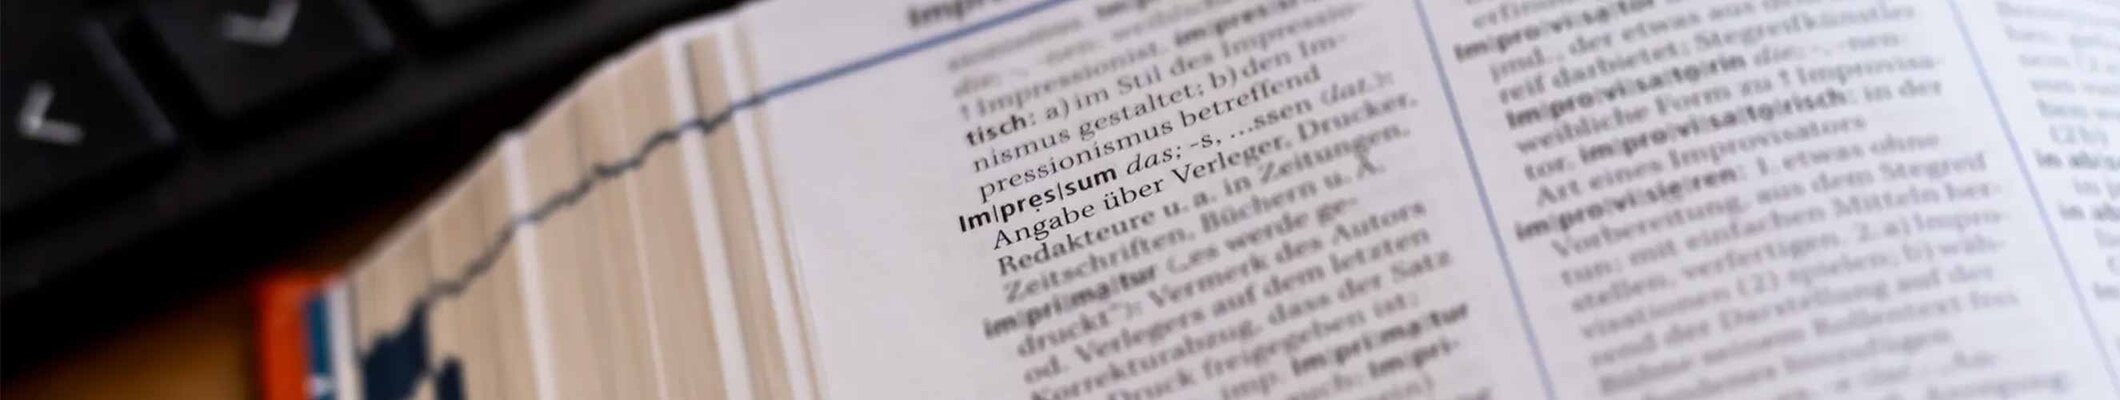 Ein Wörterbuch der den Begriff Impressum zeigt